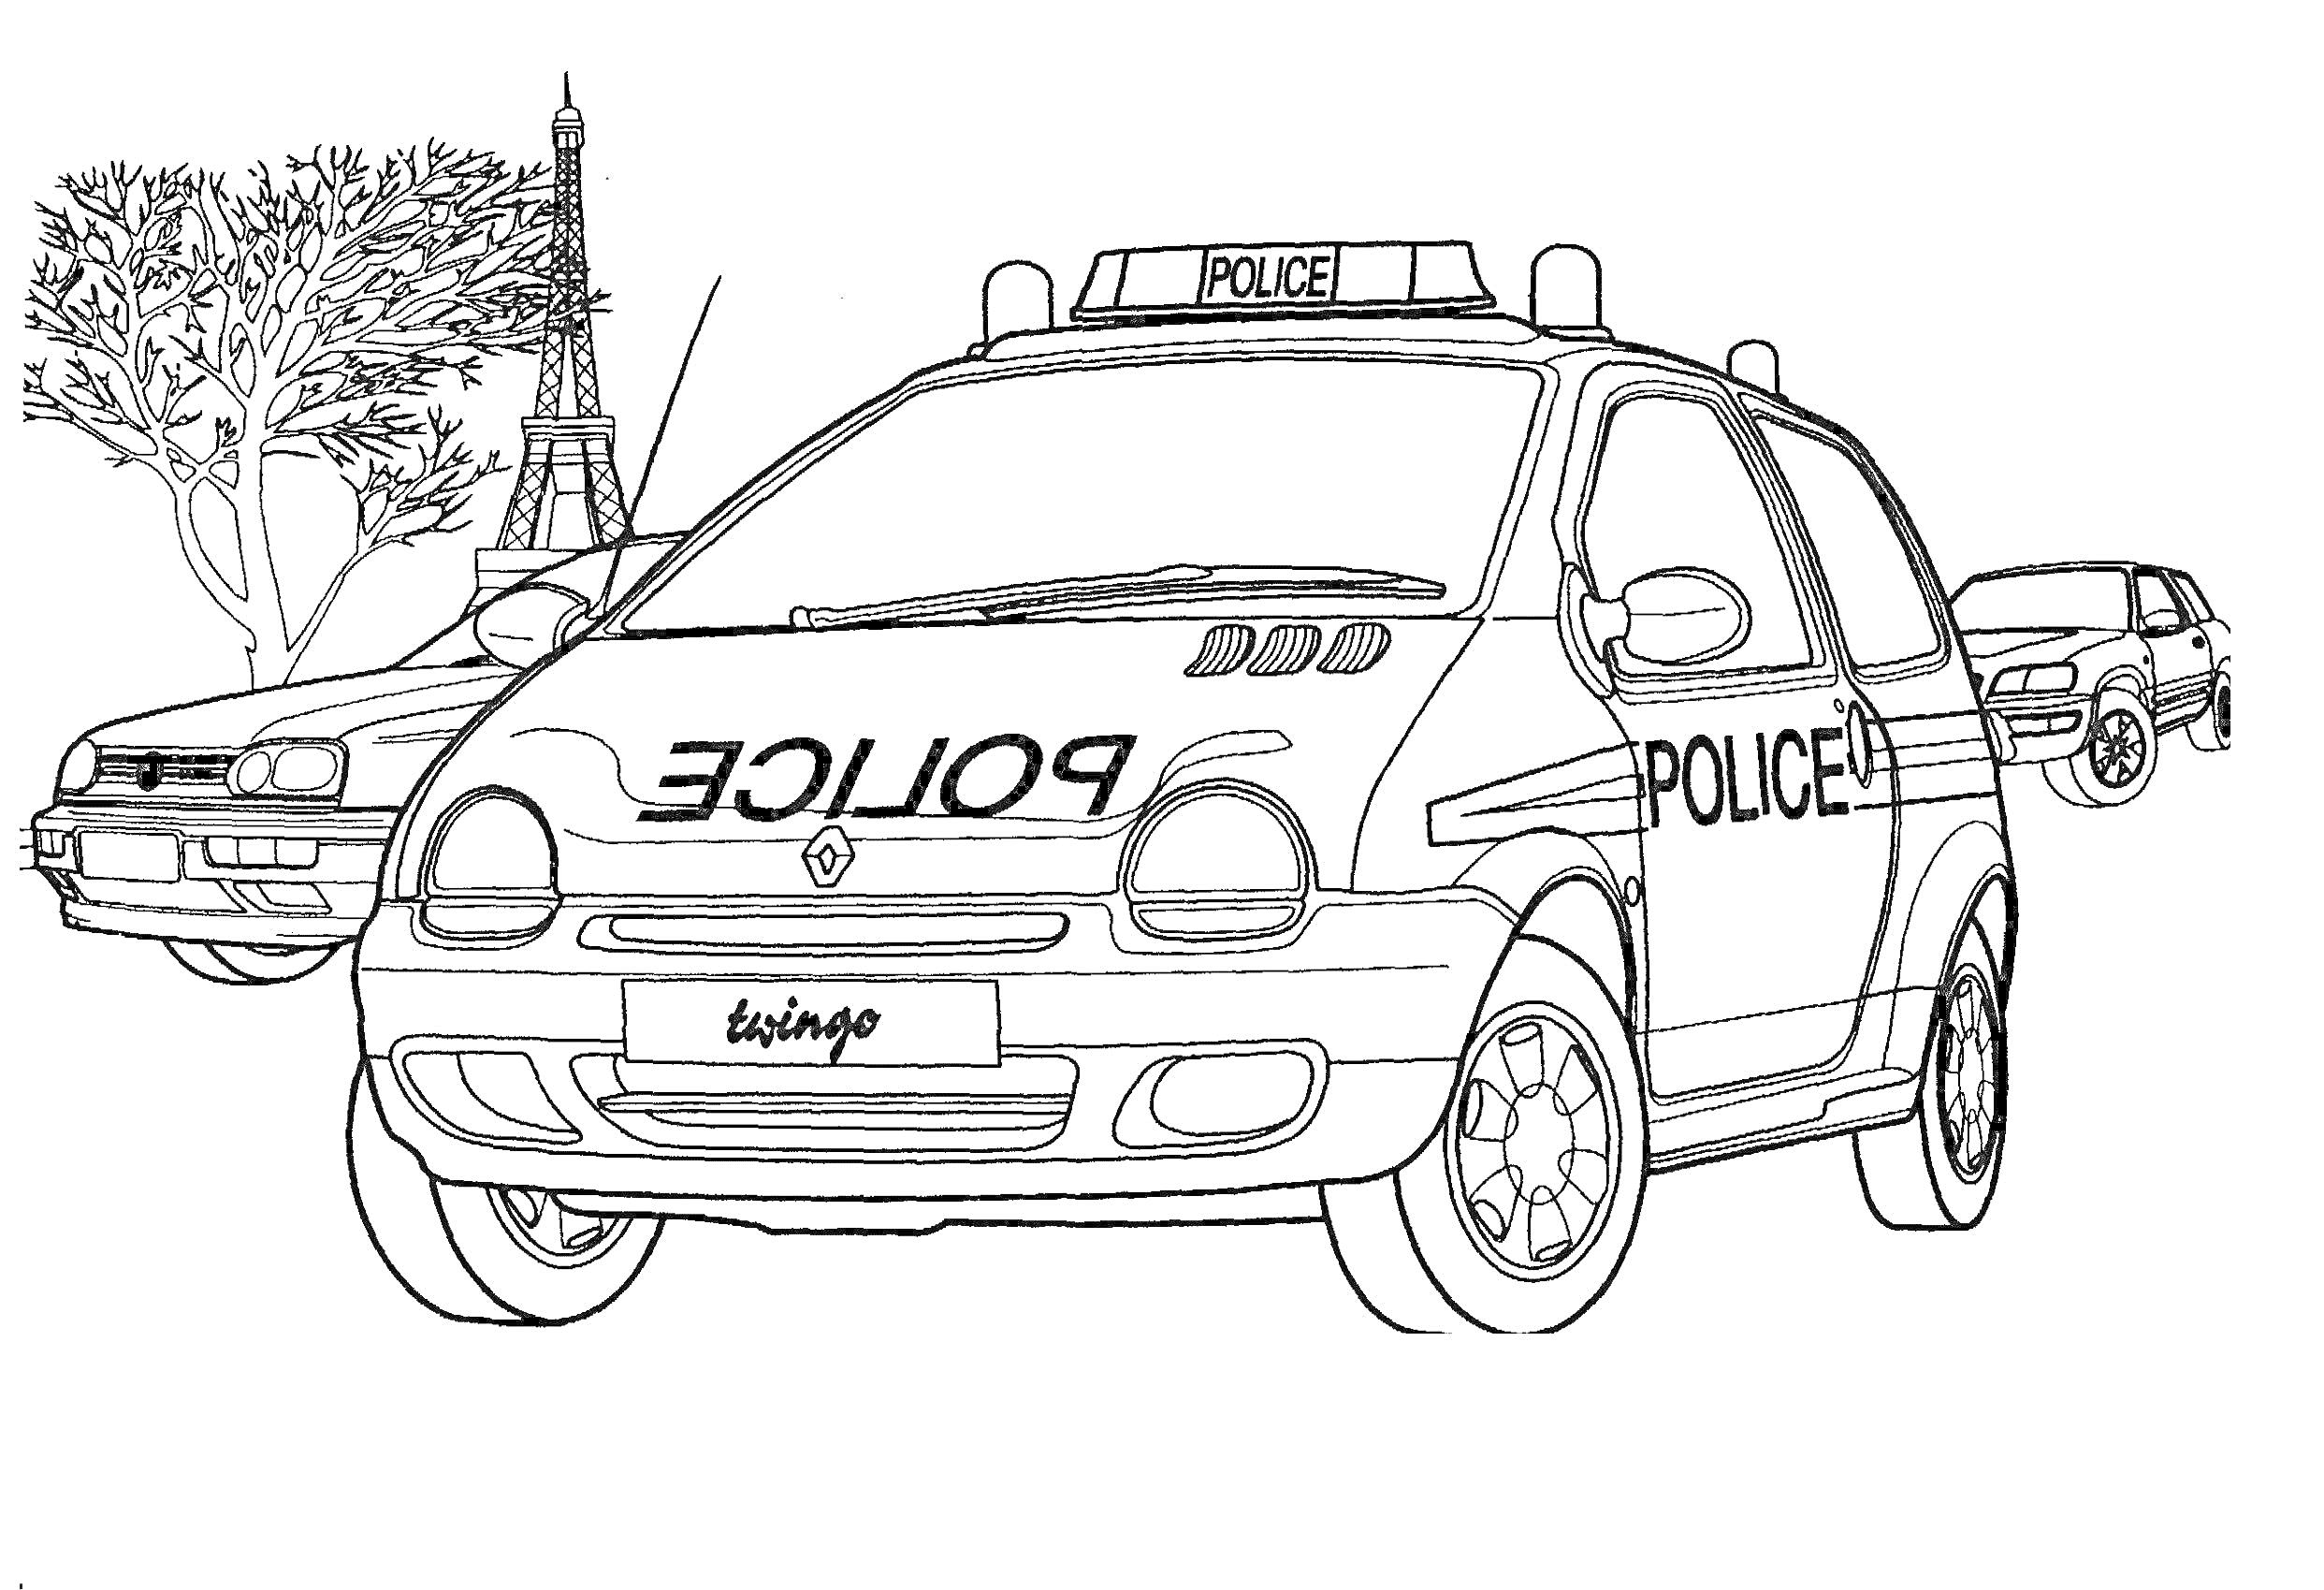 Полицейские машины на фоне Эйфелевой башни и дерева